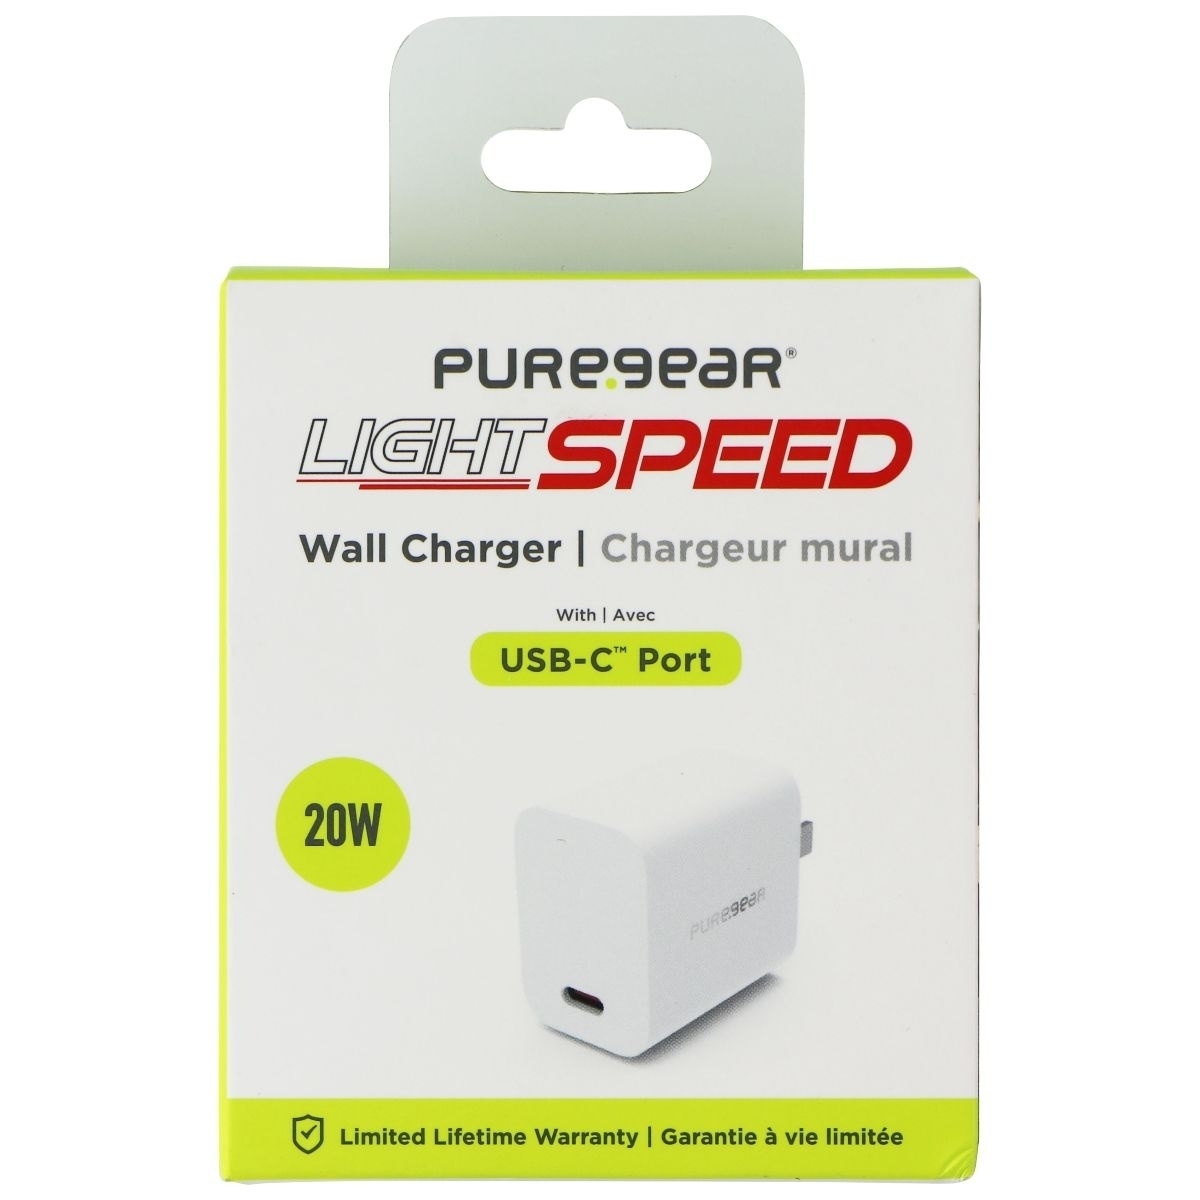 PureGear LightSpeed (20-Watt) USB-C Wall Charger Travel Adapter - White